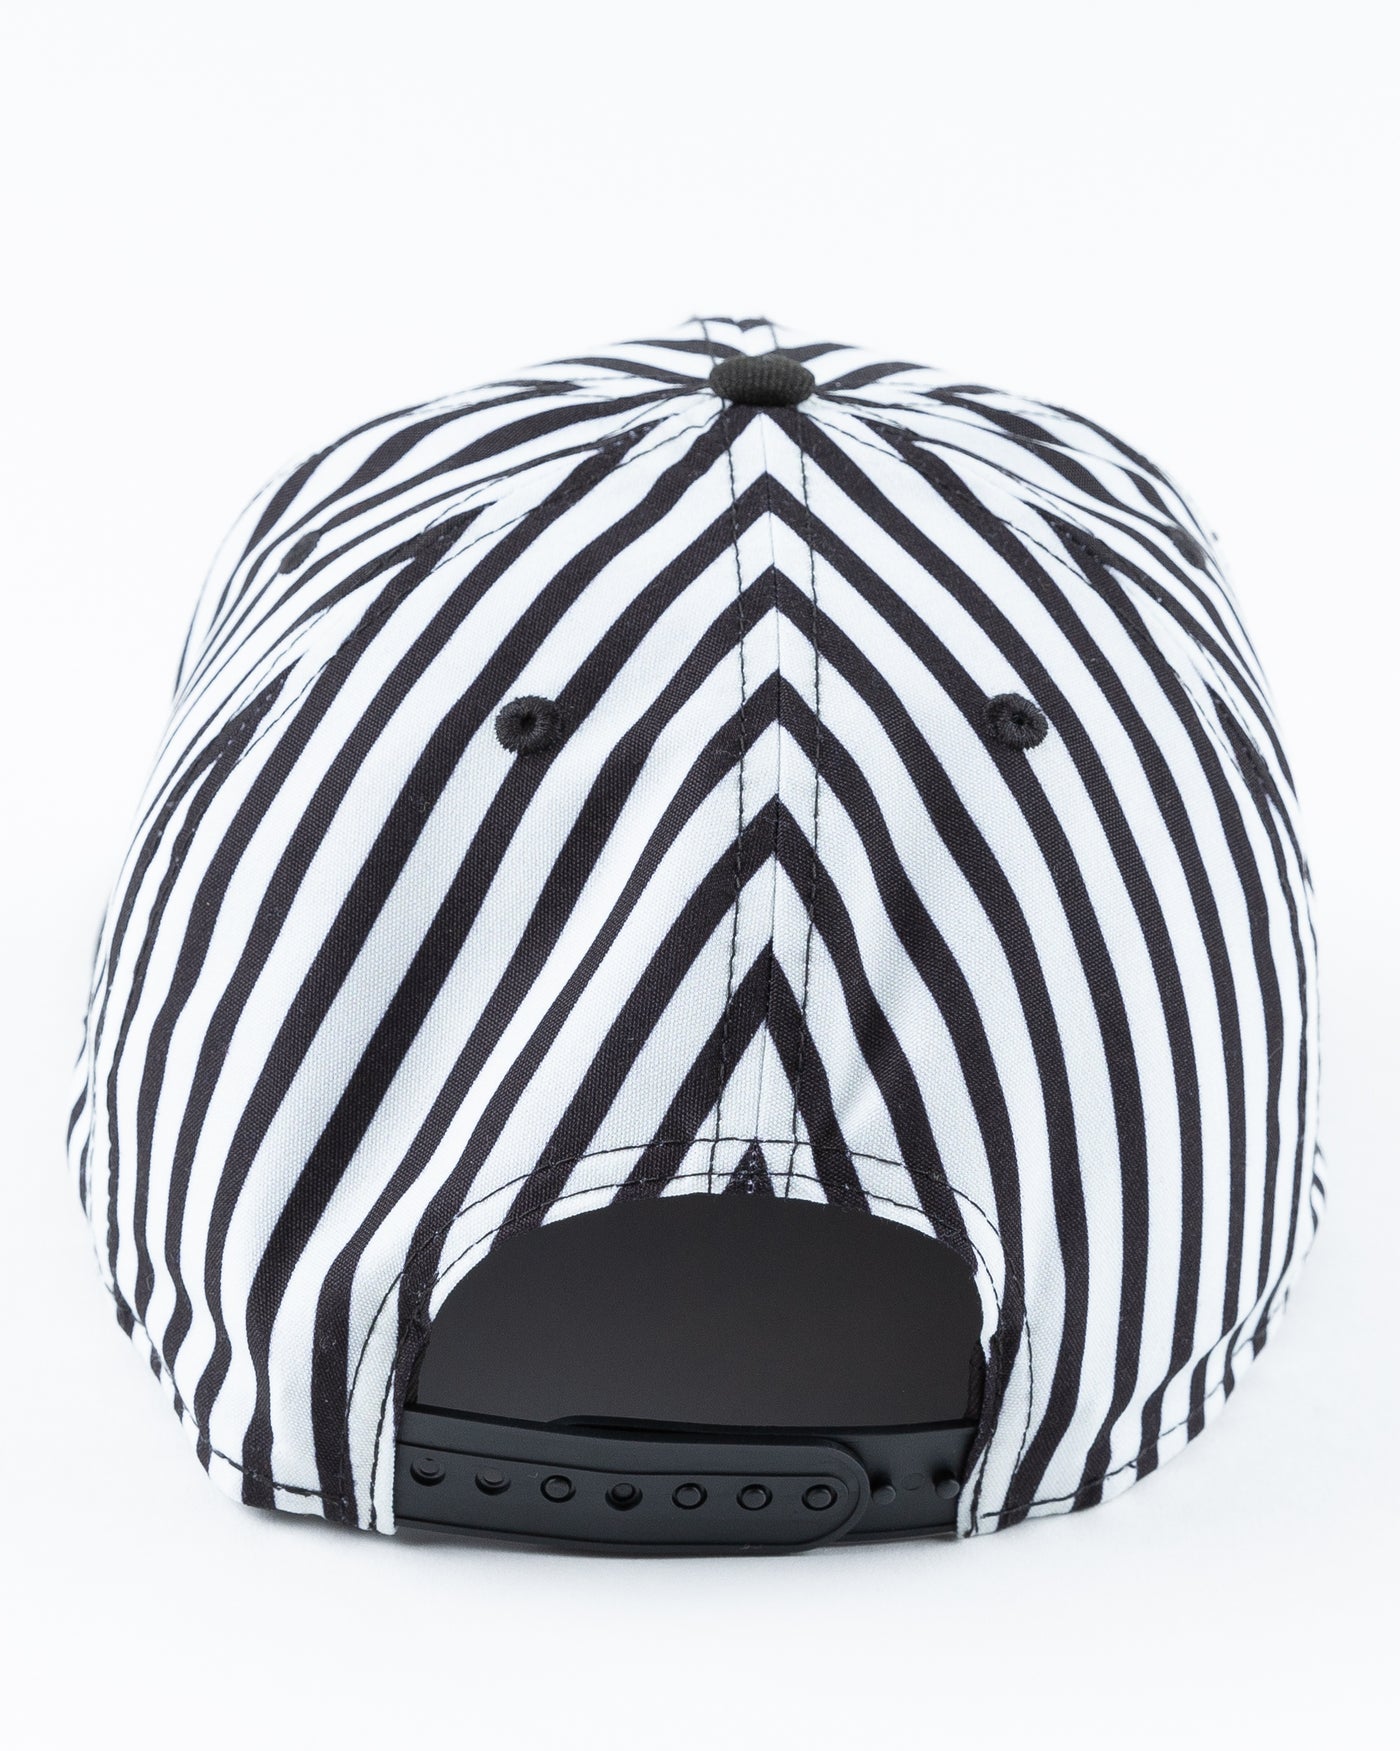 black and white zebra printed New Era snapback cap with tonal Chicago Blackhawks logo on front - back lay flat